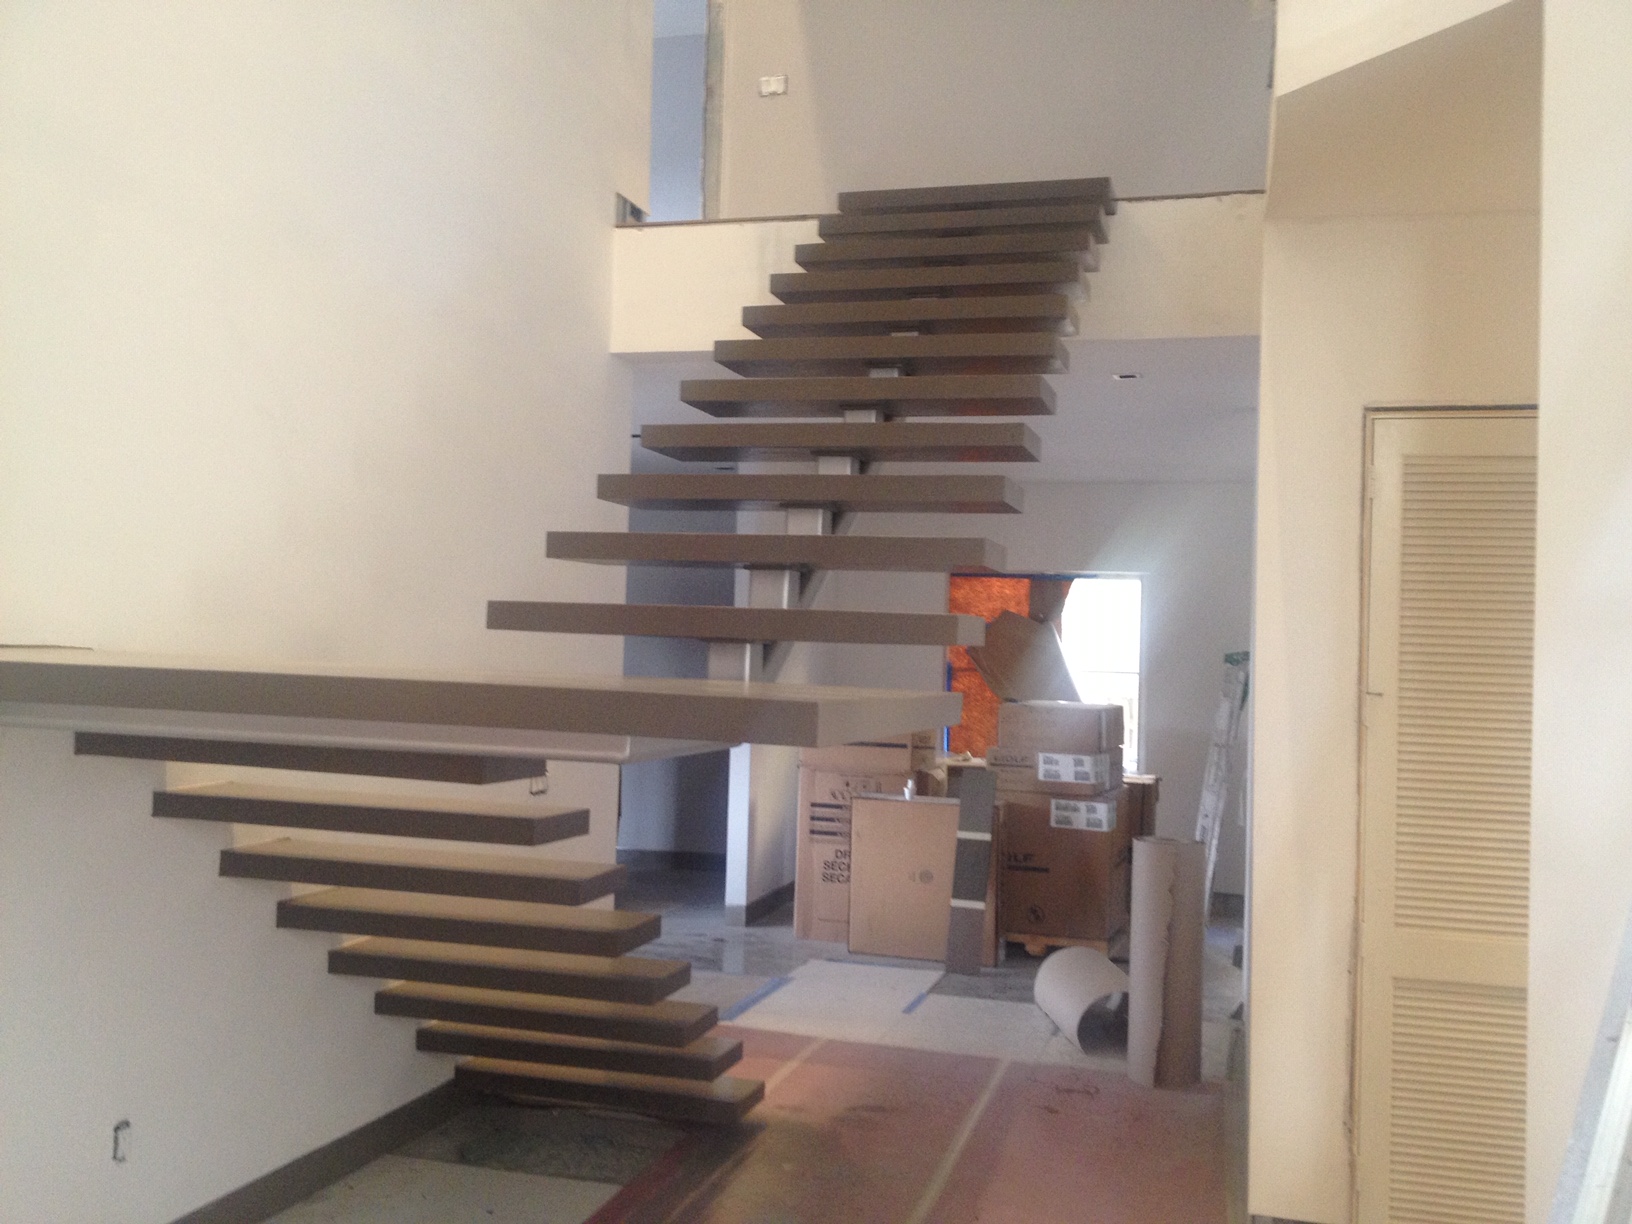 Escalera moderna y flotante, viga central, casa de Diana - David Viera